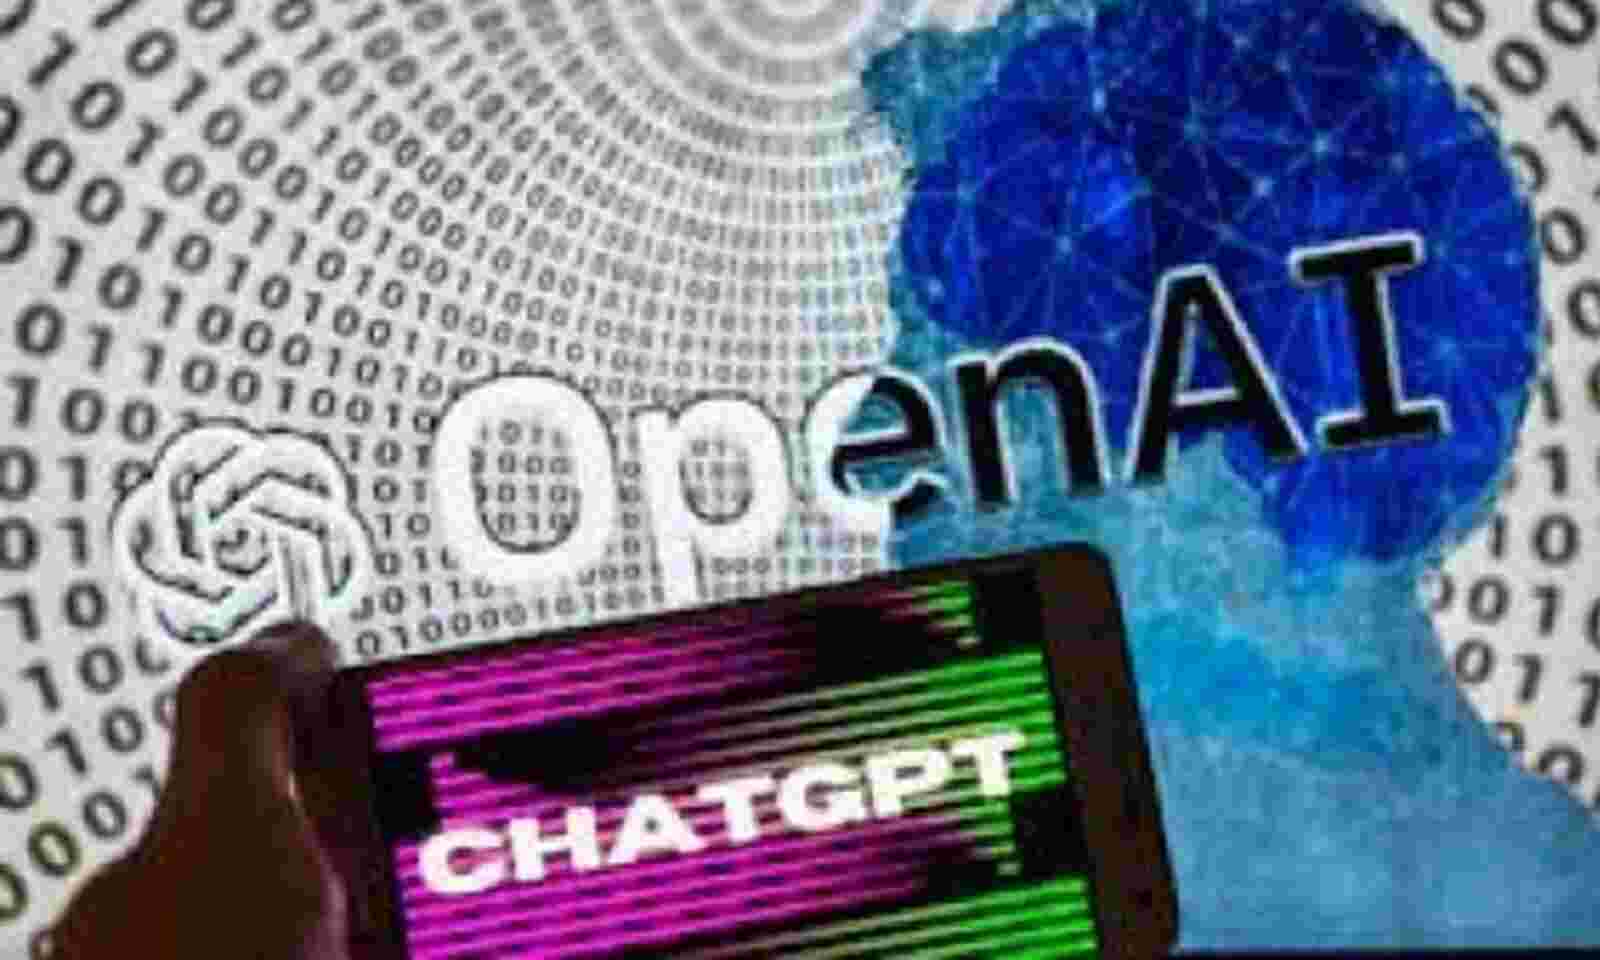 OpenAI announces bug bounty program to address AI security risks